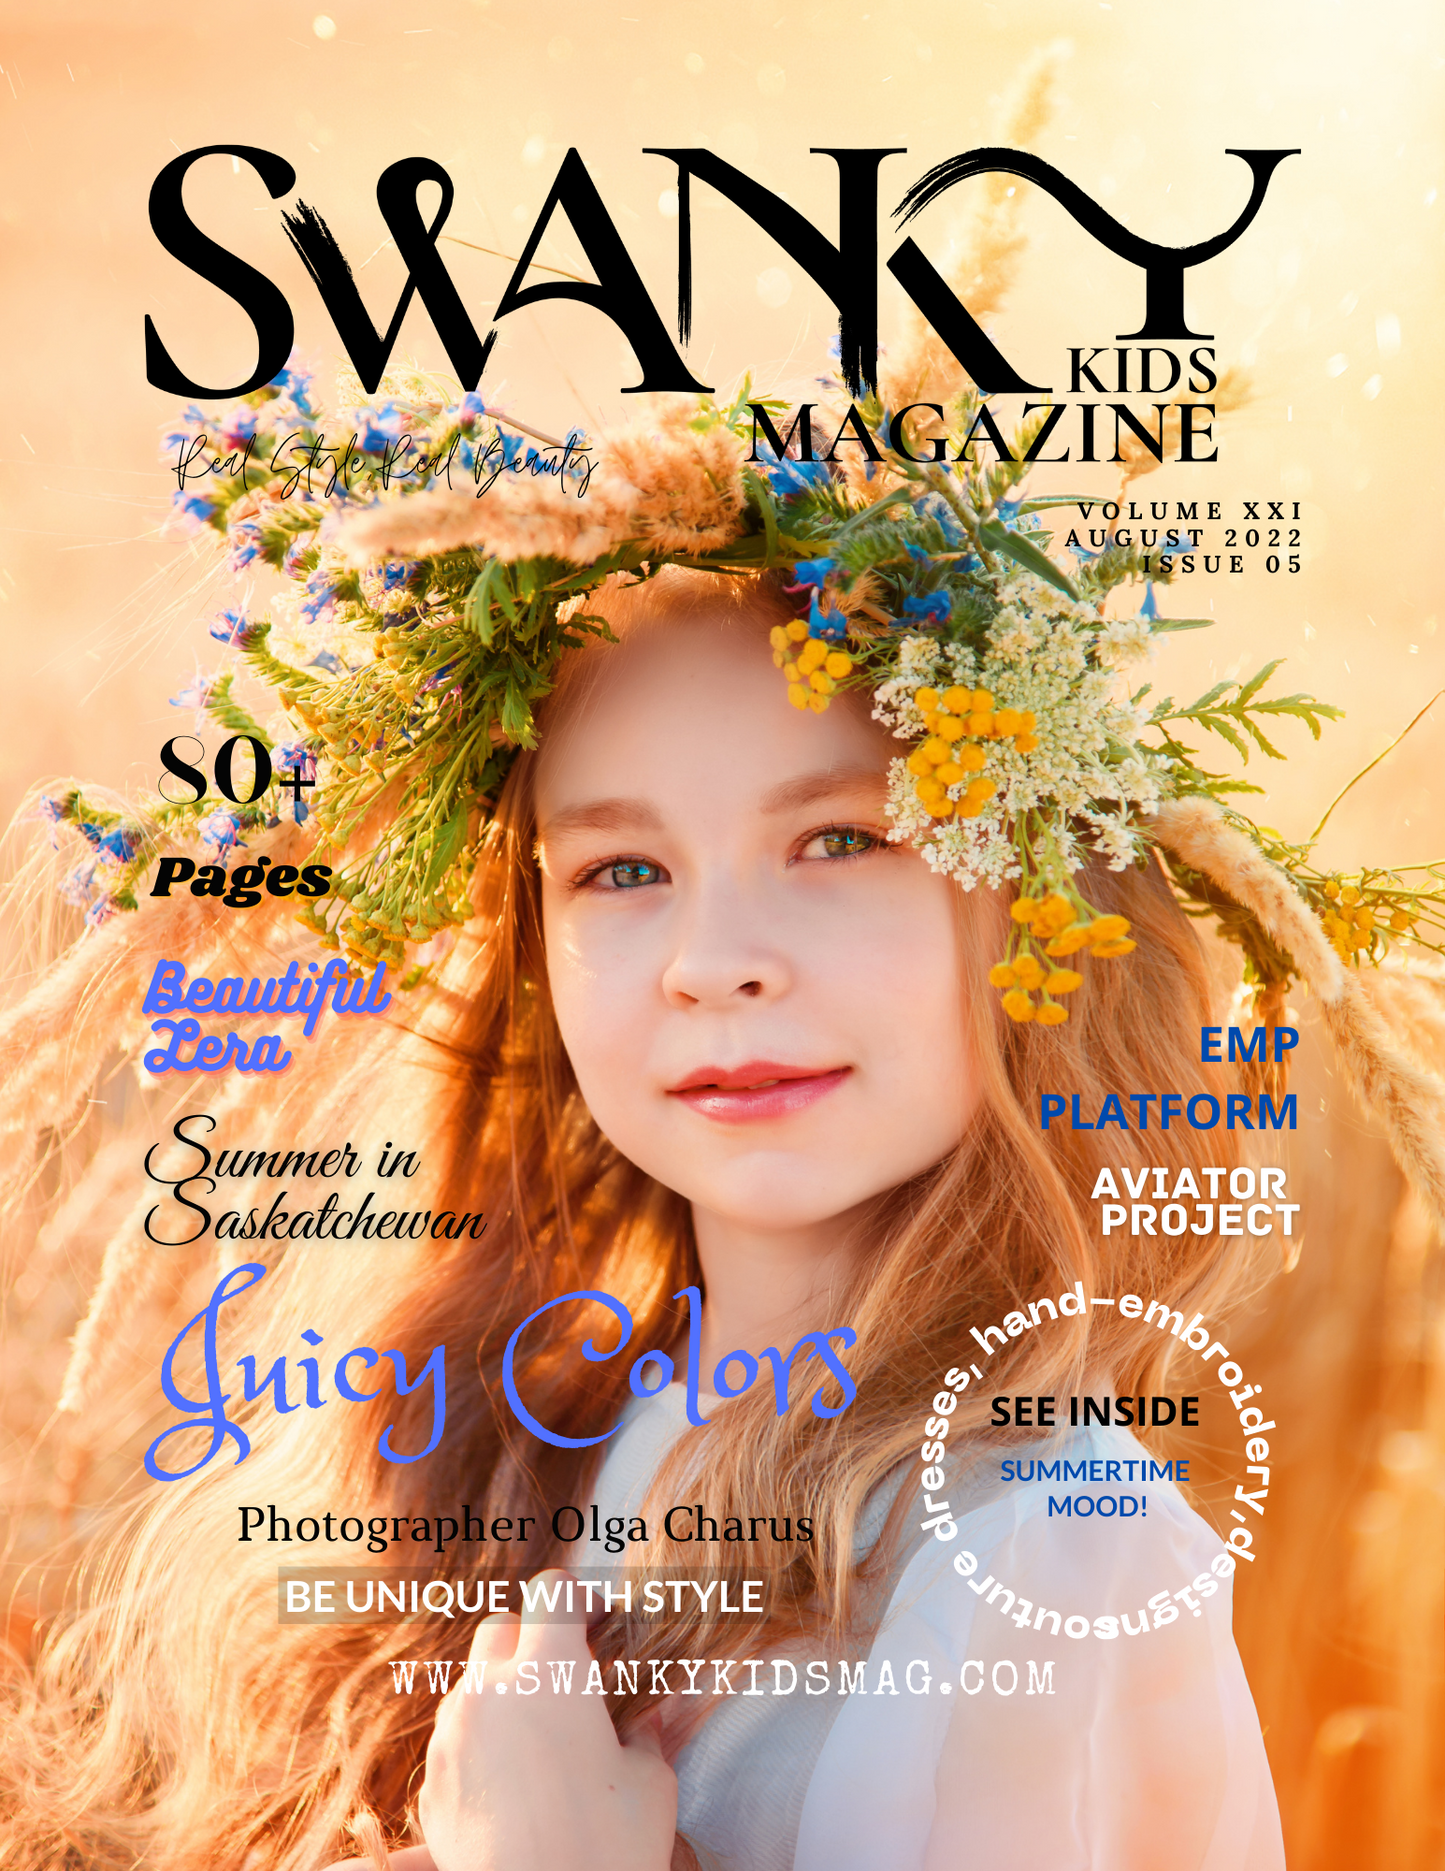 Swanky Kids Magazine AUGUST 2022 VOL XXI Issue 5